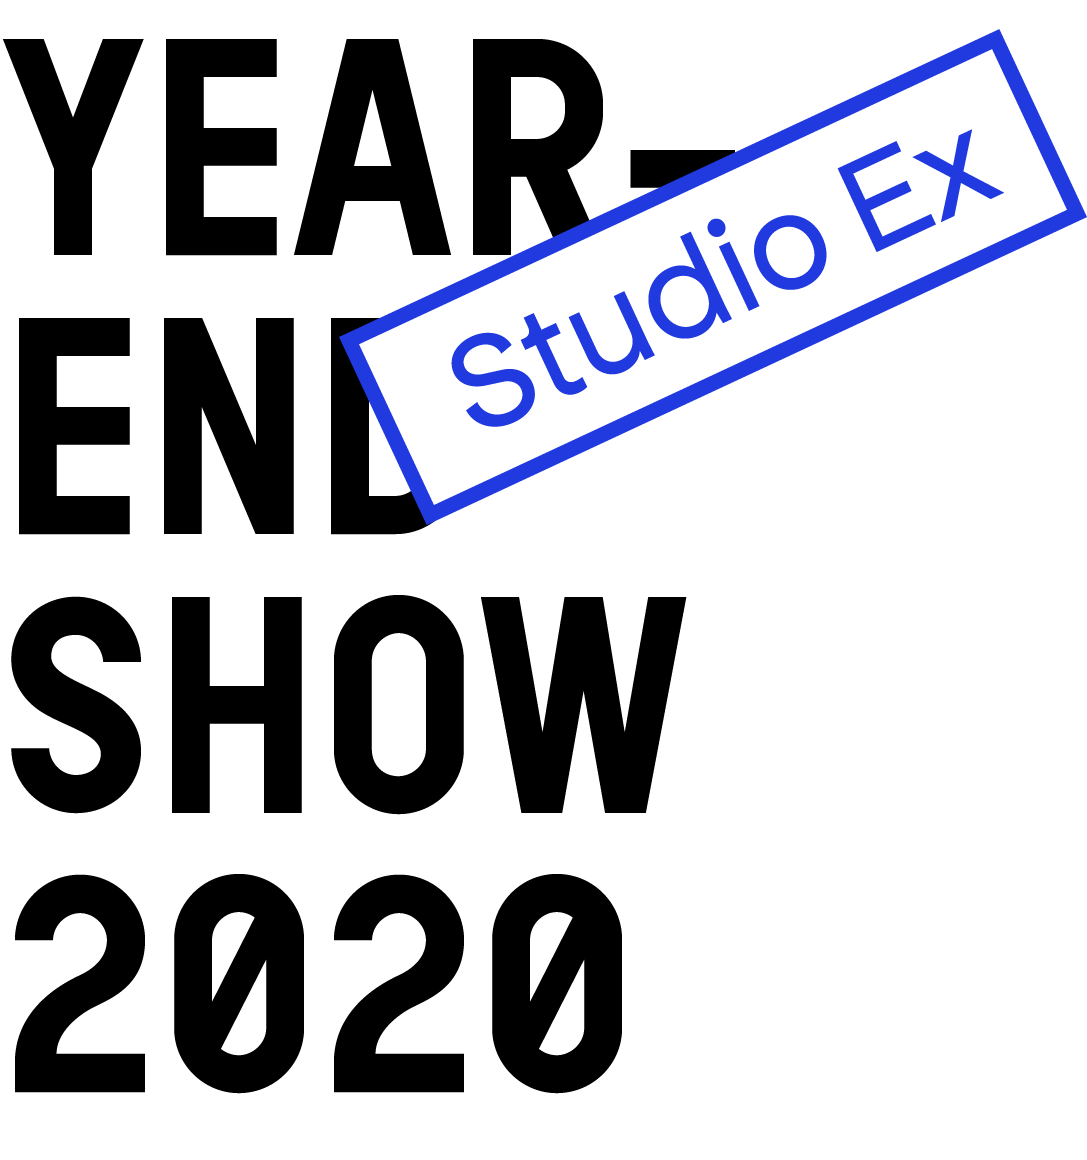 YES 2020 studio exhibition 